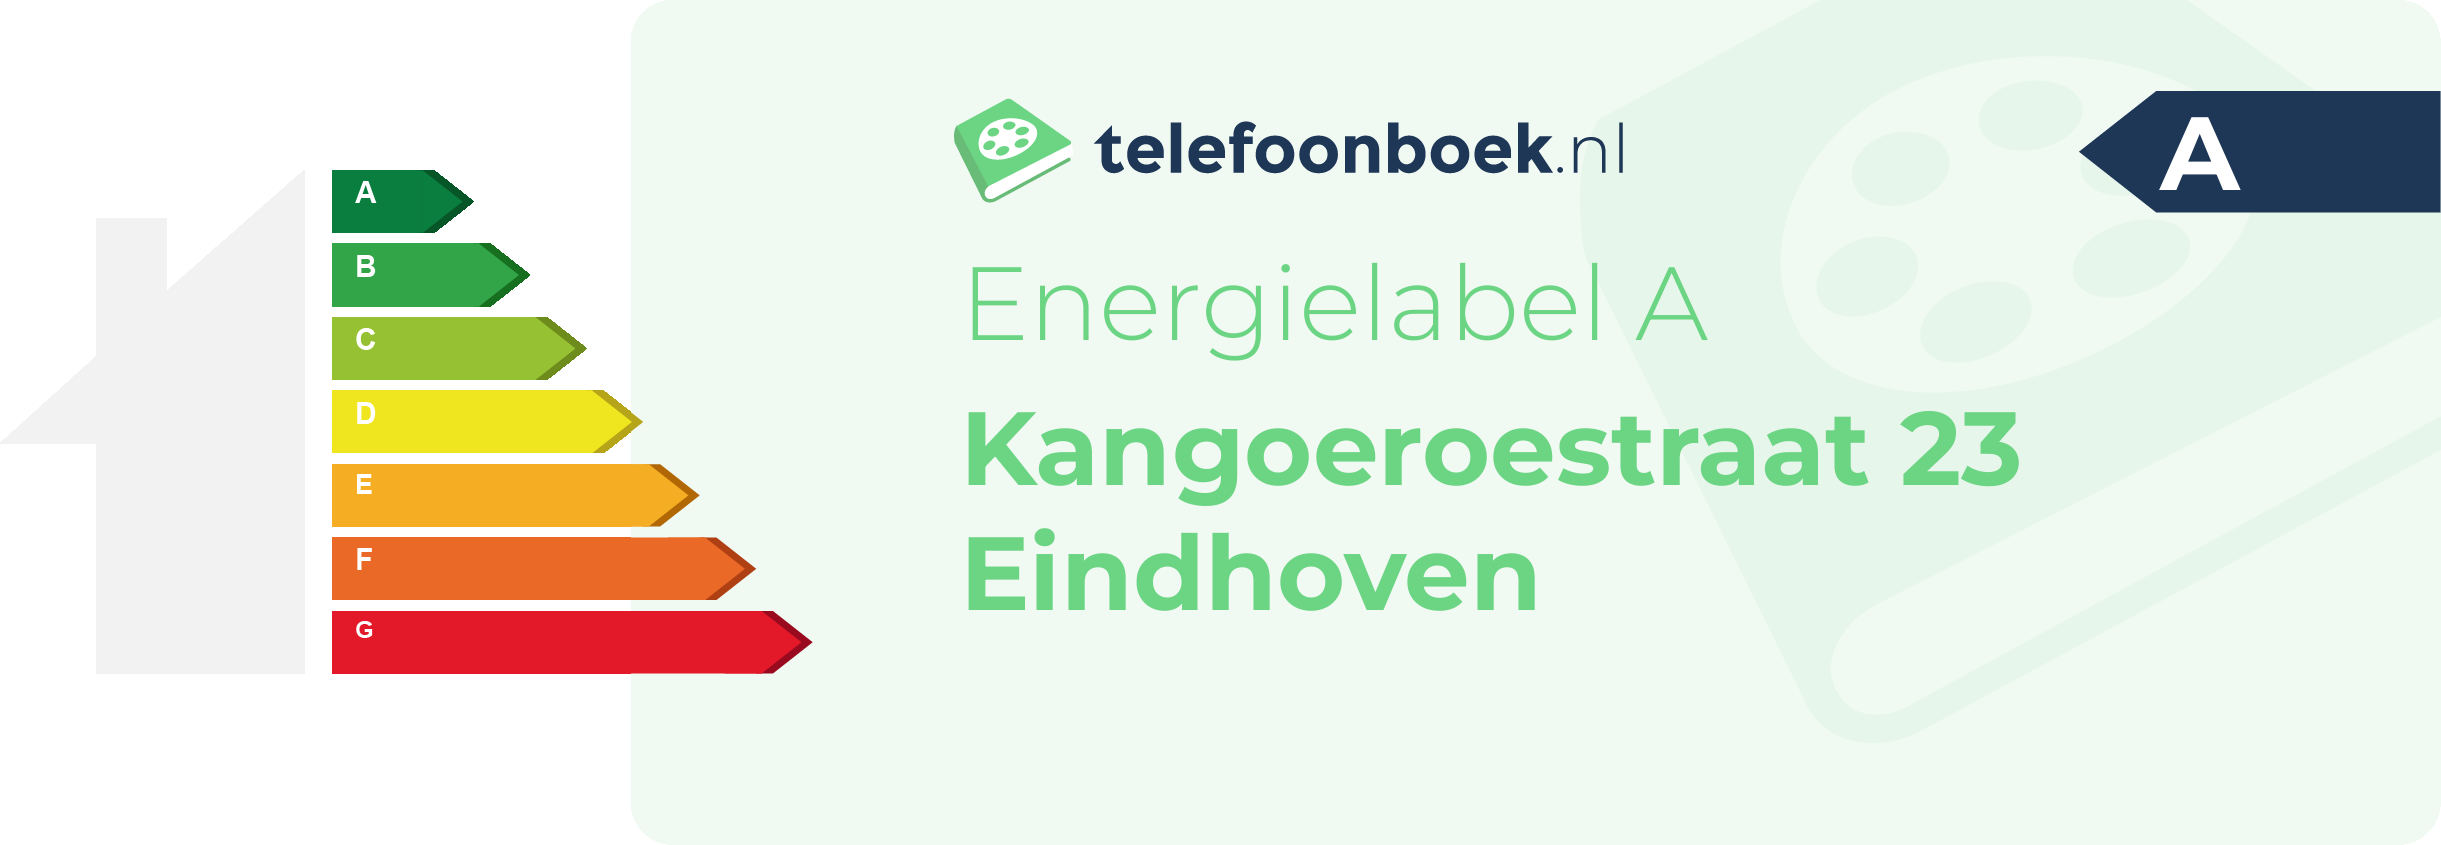 Energielabel Kangoeroestraat 23 Eindhoven